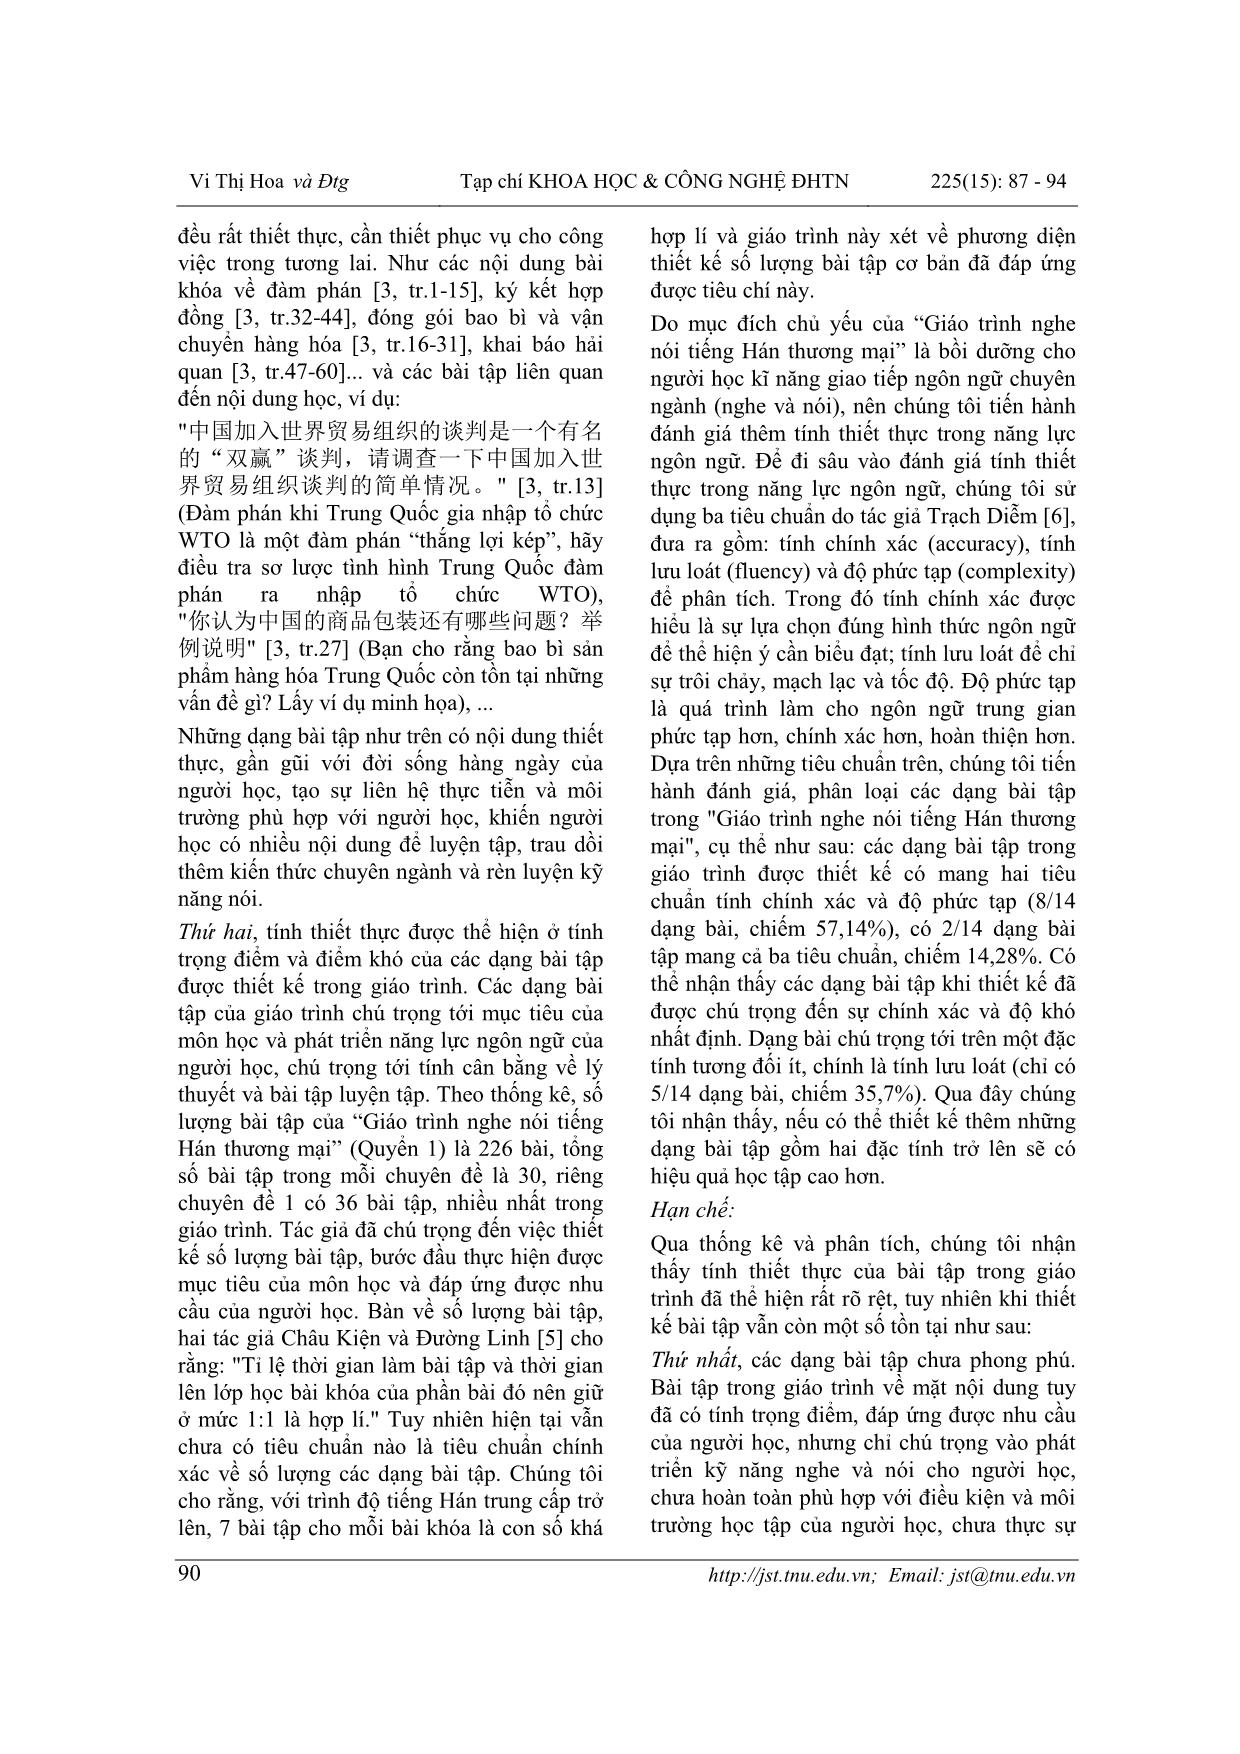 Khảo sát thiết kế bài tập trong giáo trình Tiếng Hán thương mại tại trường Ngoại ngữ - Đại học Thái Nguyên (Khảo sát “Giáo trình nghe nói tiếng Hán thương mại”) trang 4